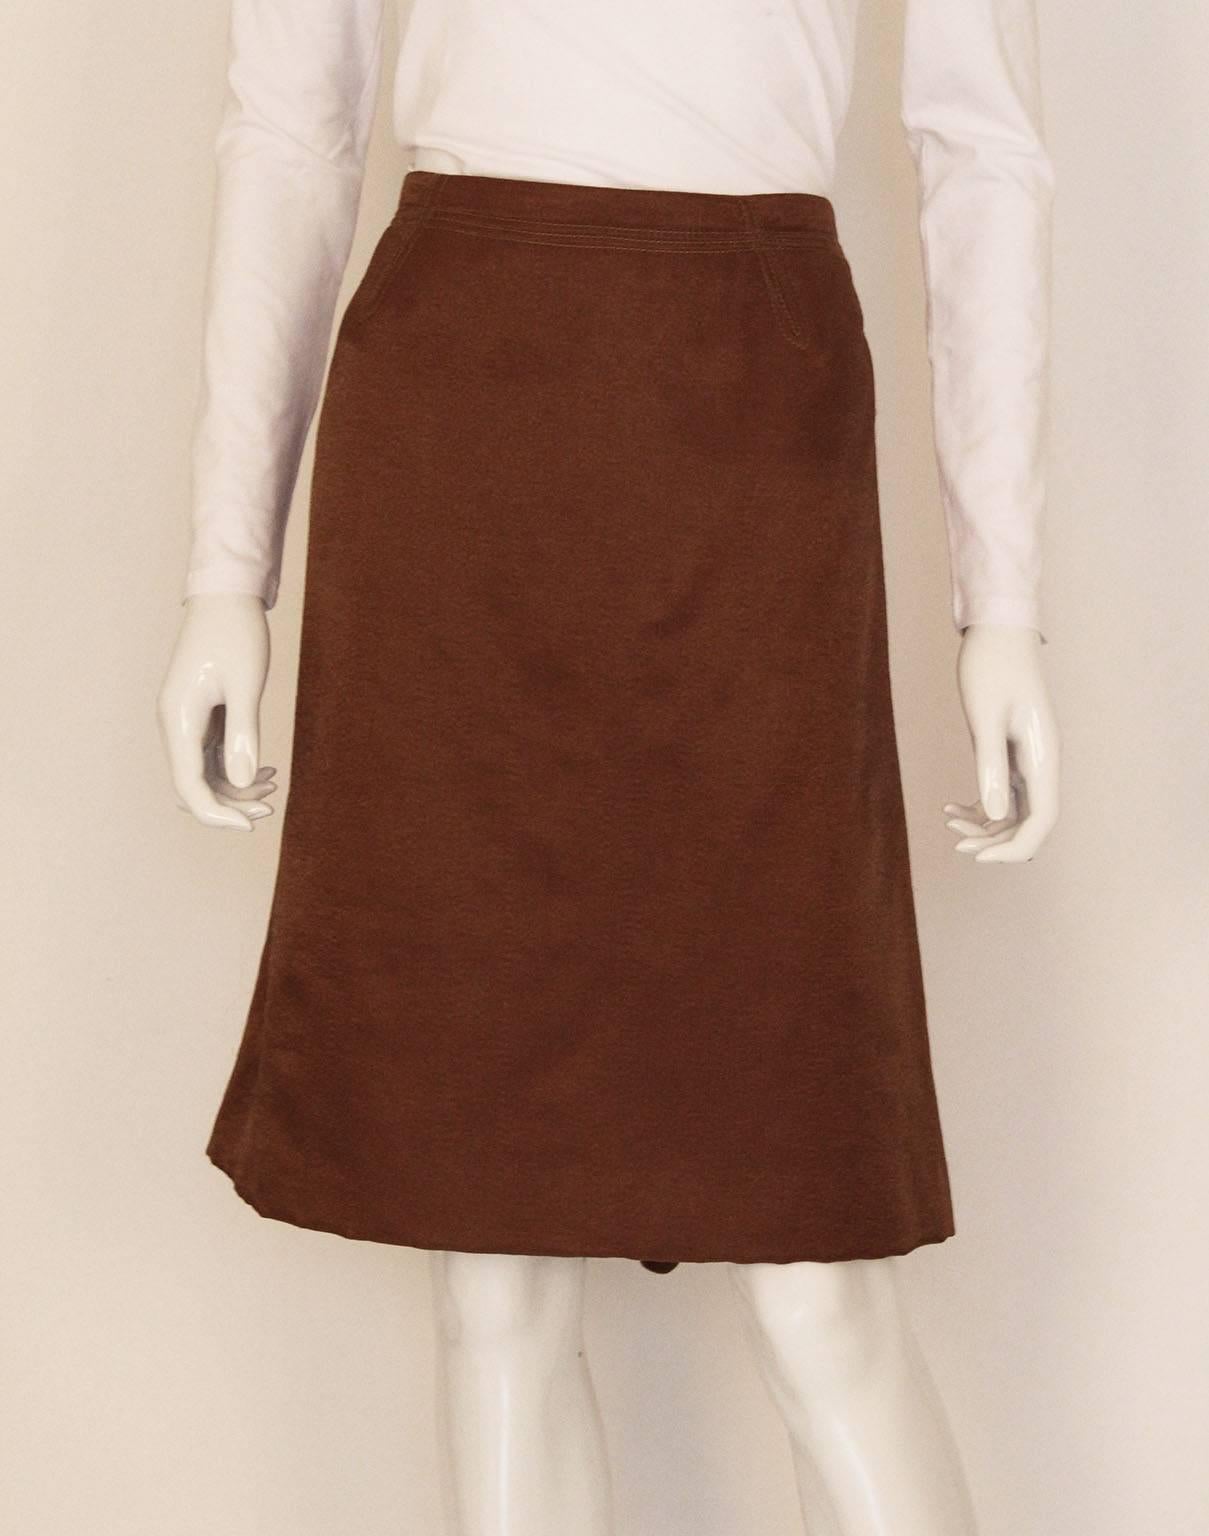 Une magnifique jupe couleur bronze de Nina Ricci, Paris. La jupe est réalisée dans un luxueux mélange de laine, et est entièrement doublée. Il y a une double rangée de coutures sur la bande de taille, et le dos a un détail intéressant en zigzag et